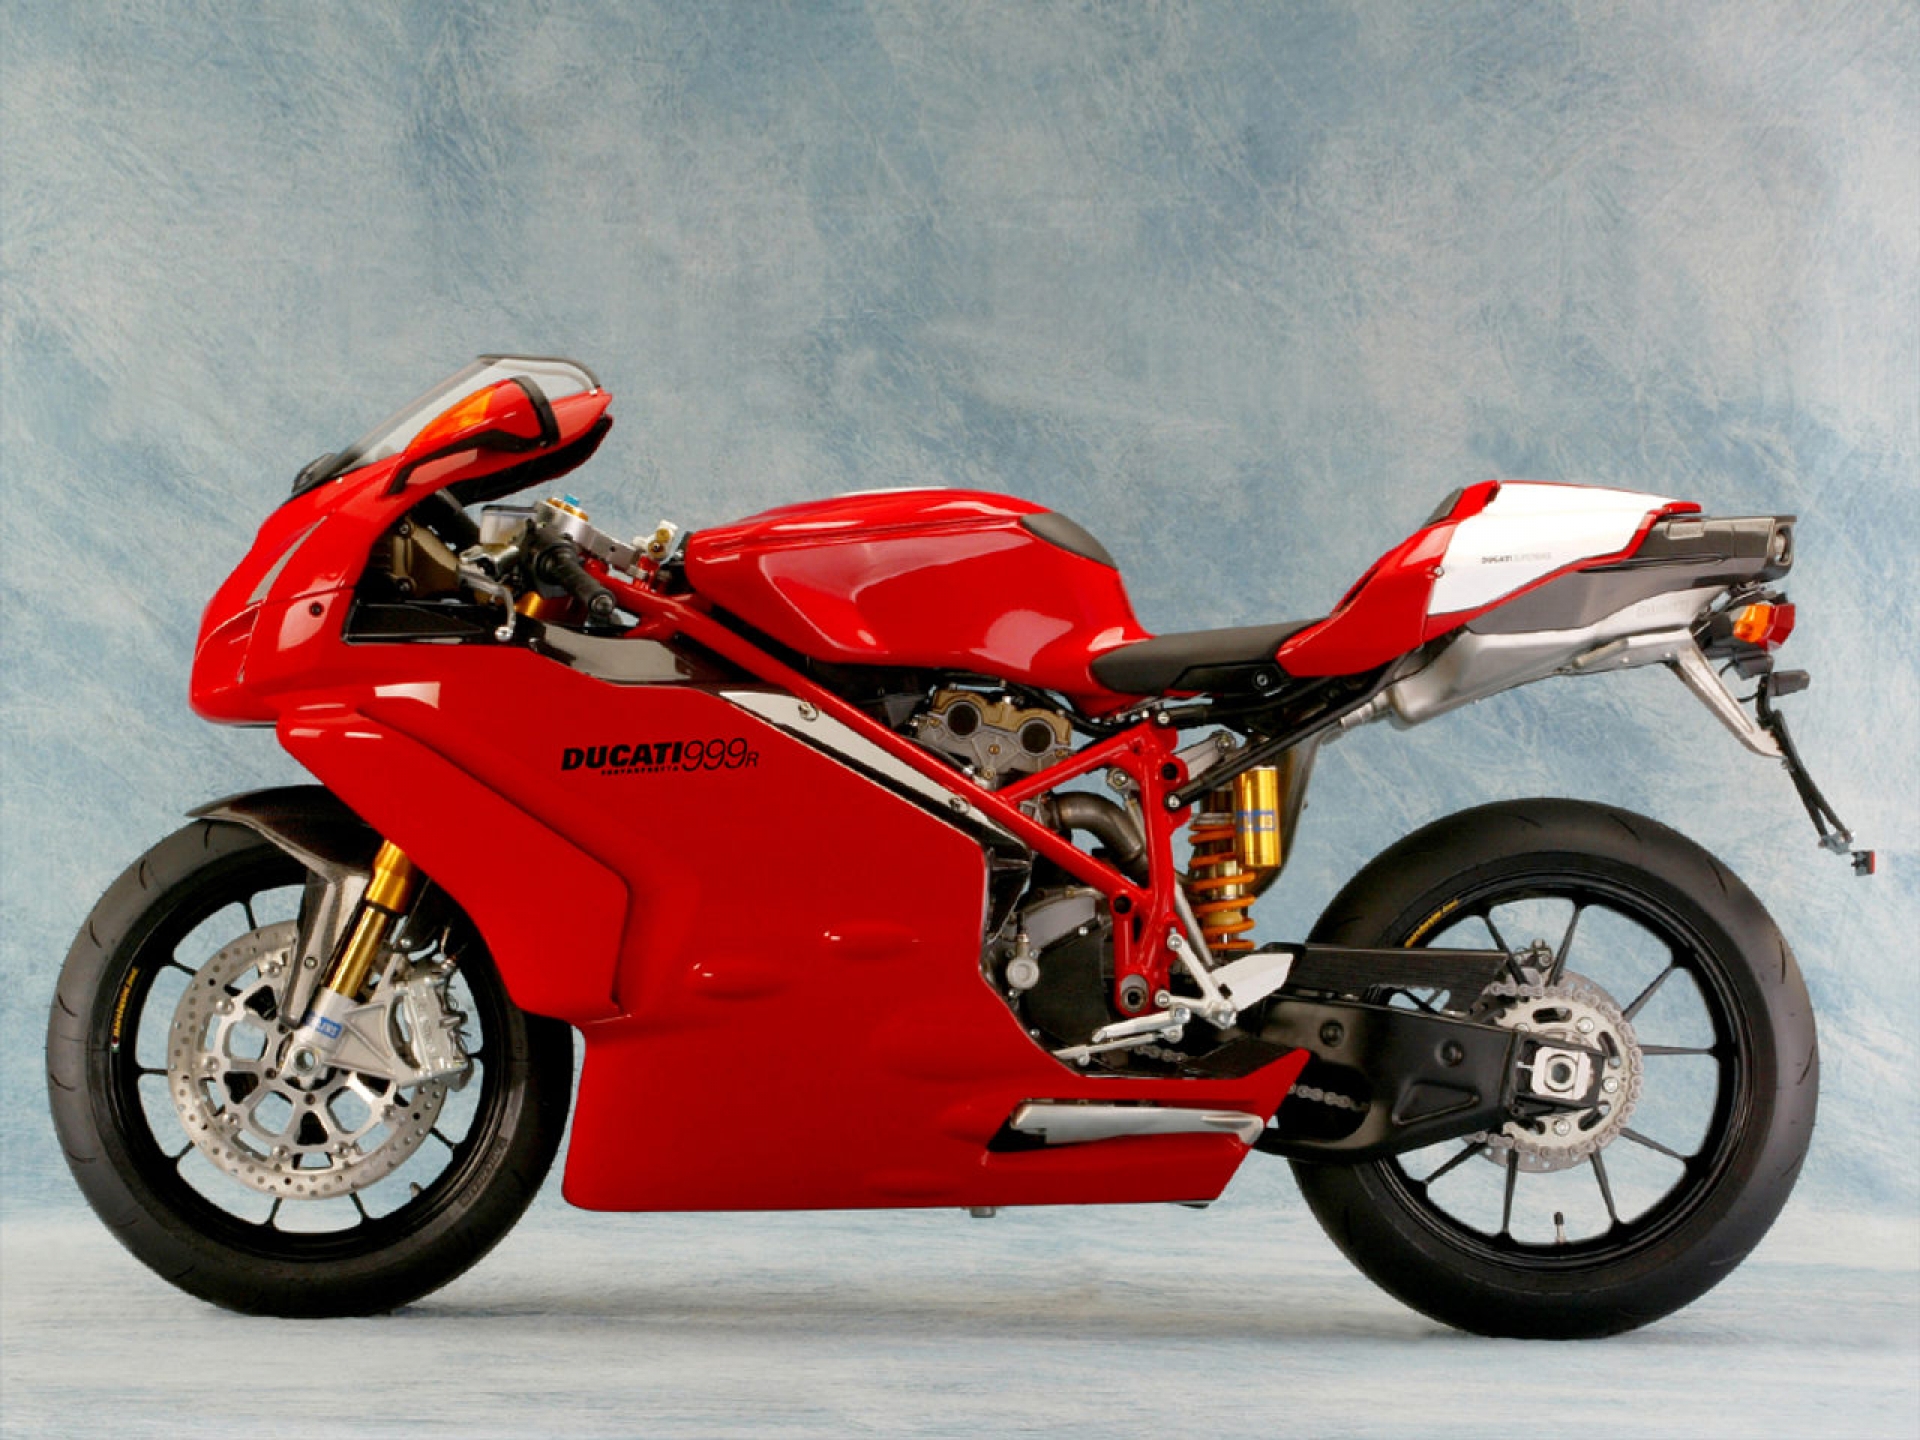 Ducati Superbike 999R Xerox #7